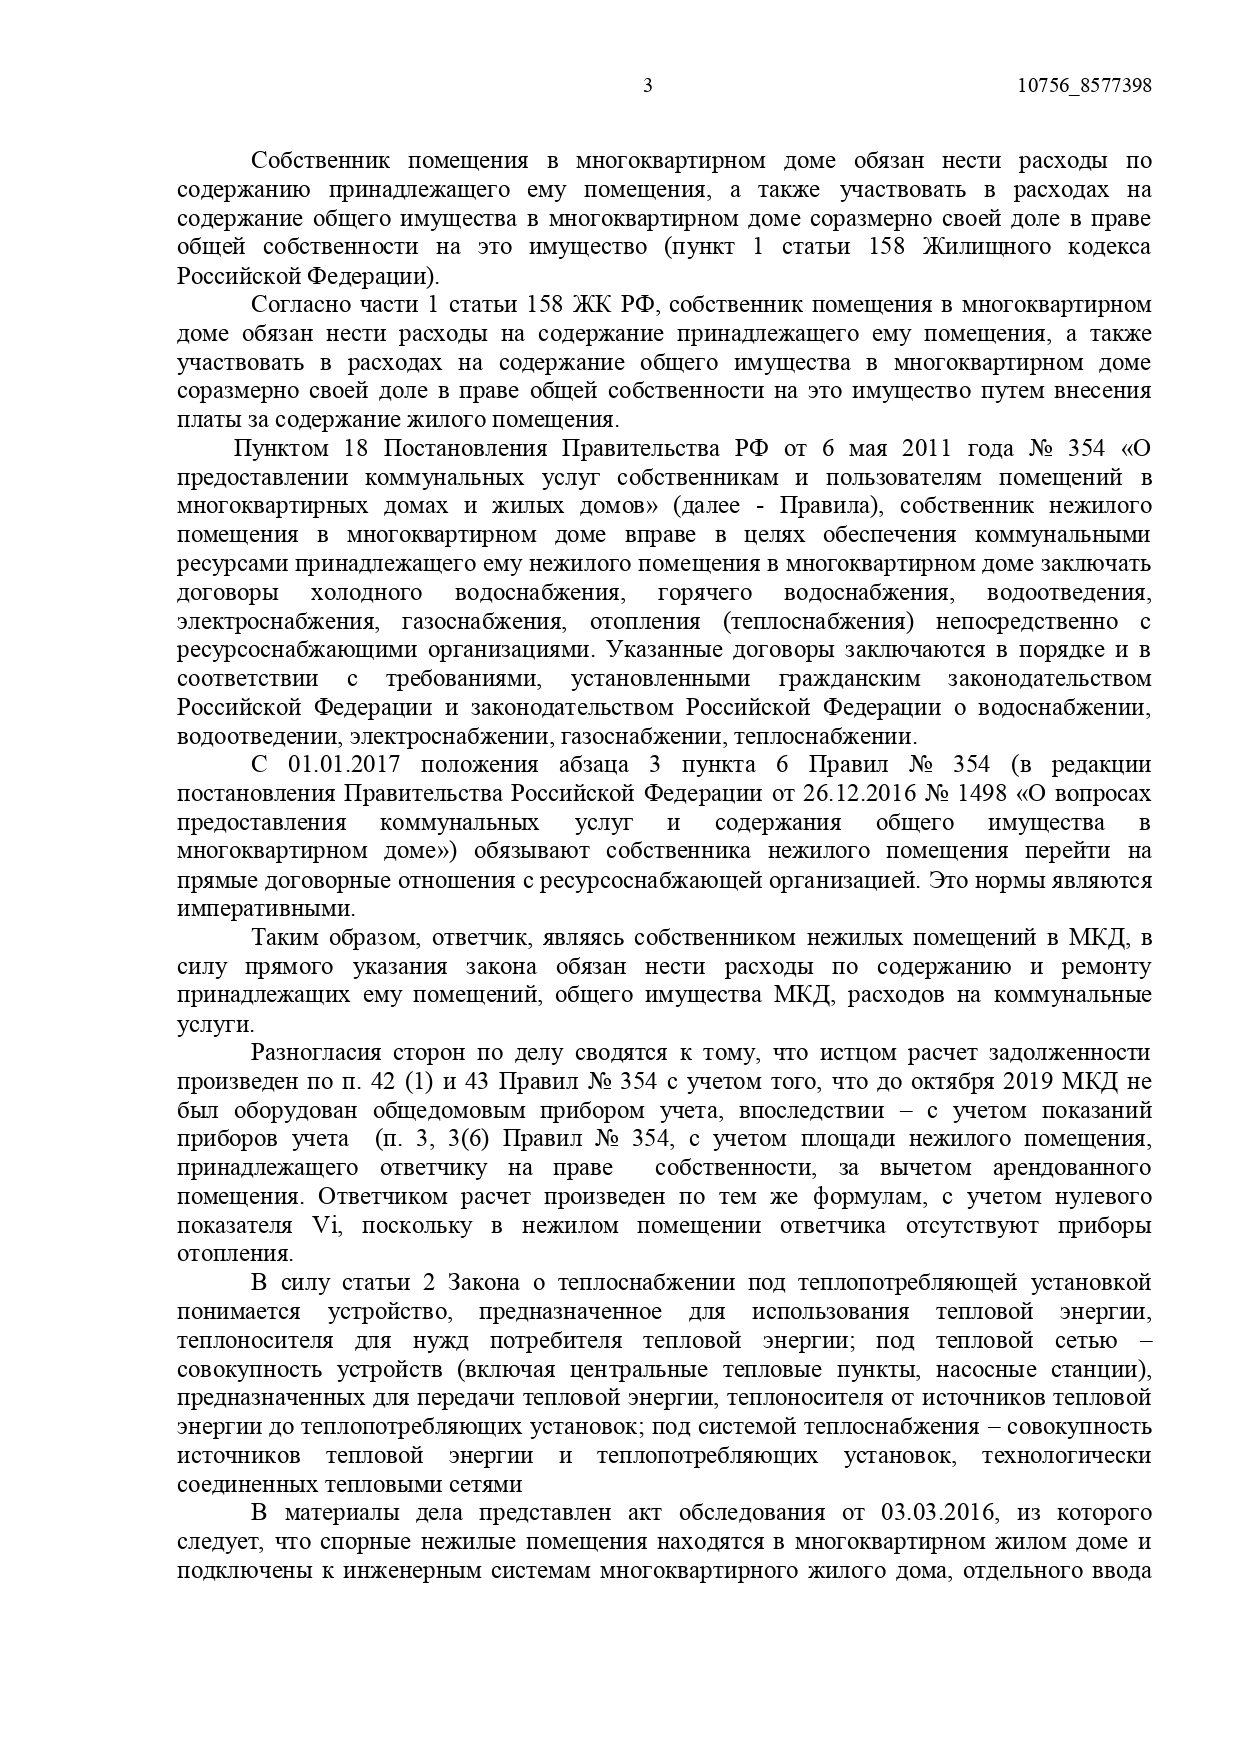 Арбитражный суд Ростовской области вынес решение по делу №А53-3666/2021